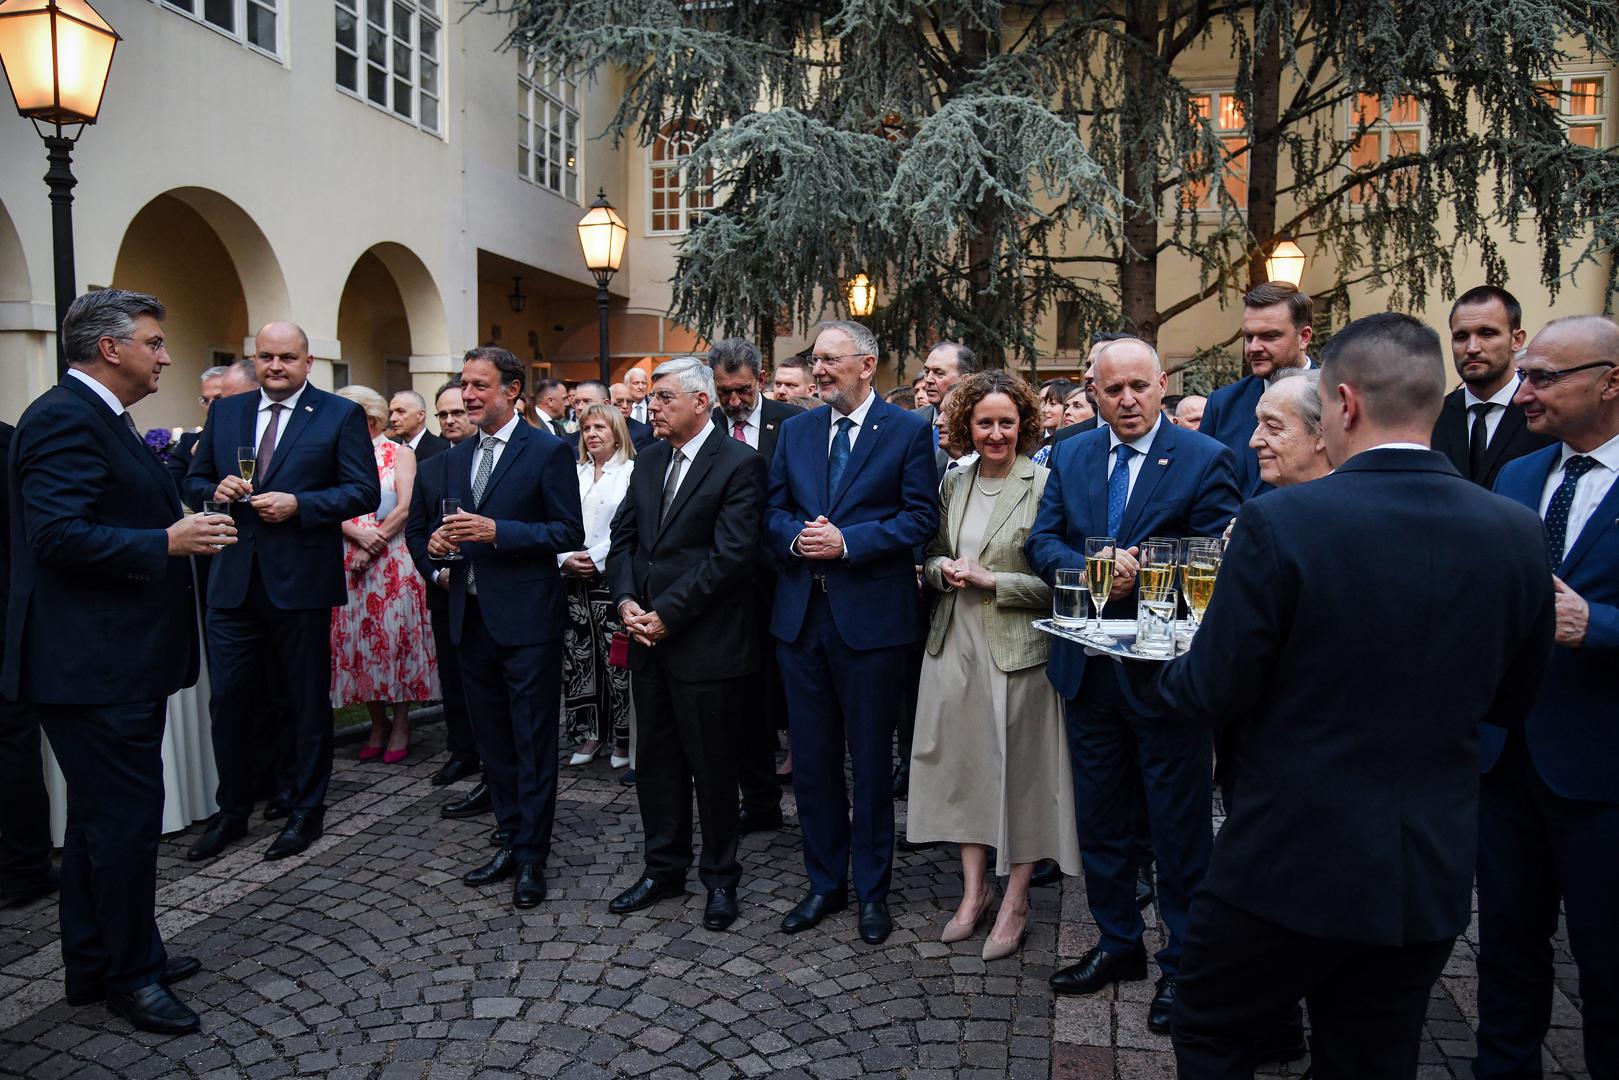 U povodu obilježavanja 11. obljetnice hrvatskog članstva u Europskoj uniji, predsjednik Vlade Andrej Plenković bio je domaćin svečanog primanja u Banskim dvorima. Druženje se održalo 3. srpnja u 20:15, a skupili su se brojni poznati gosti.